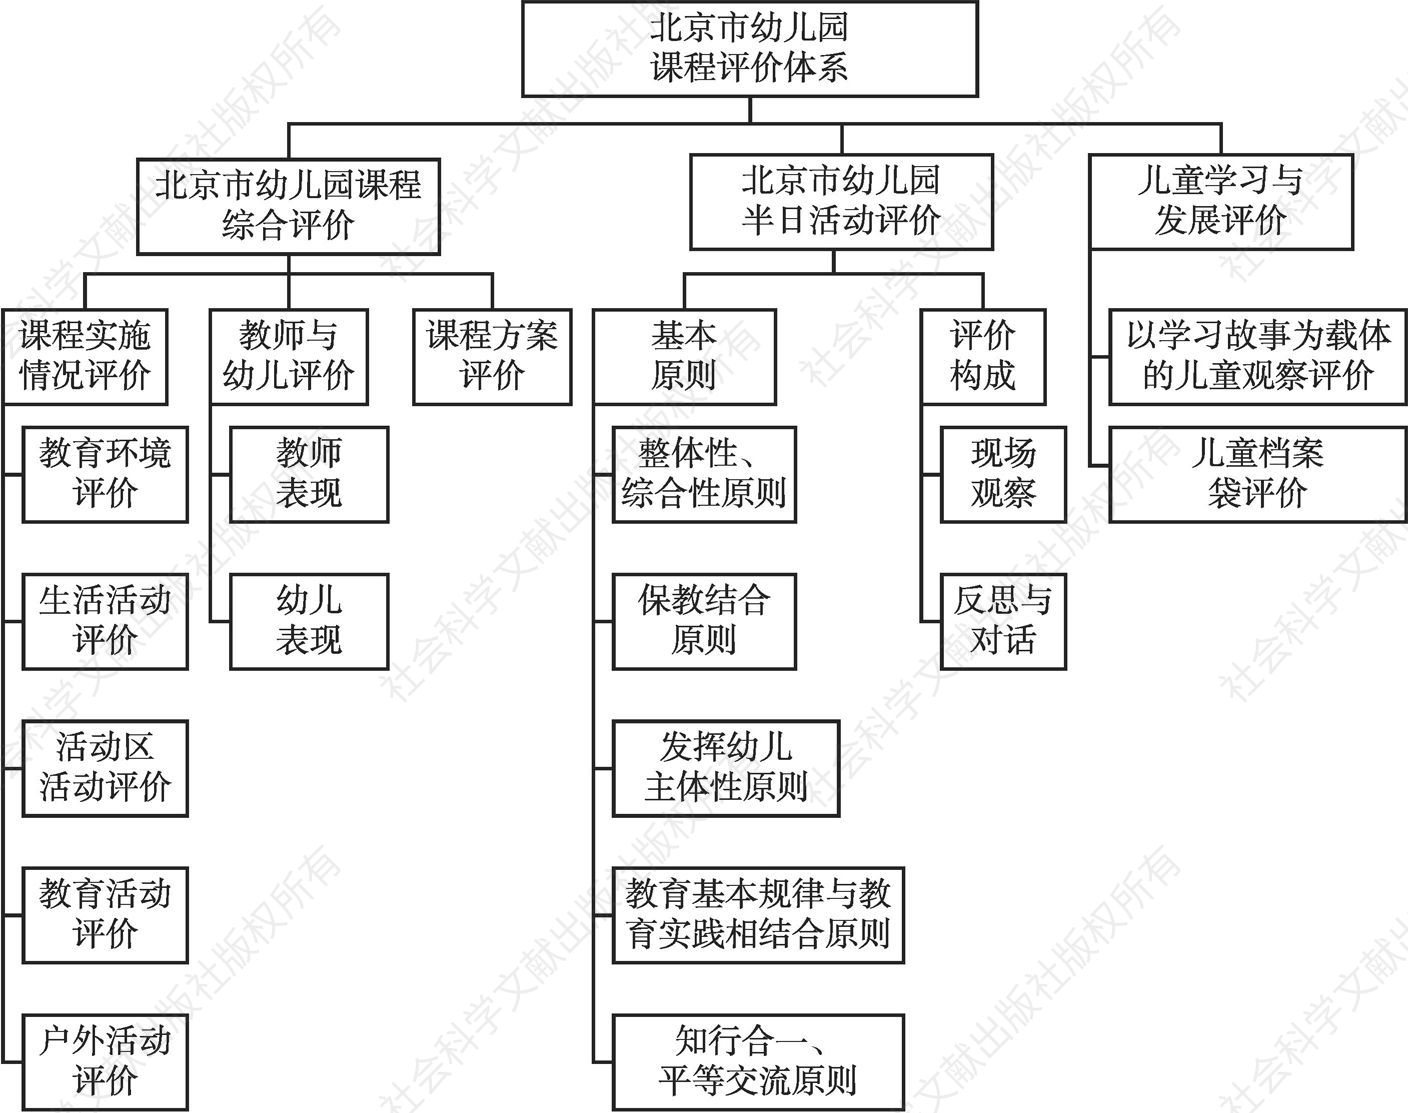 图1 北京市幼儿园课程评价体系